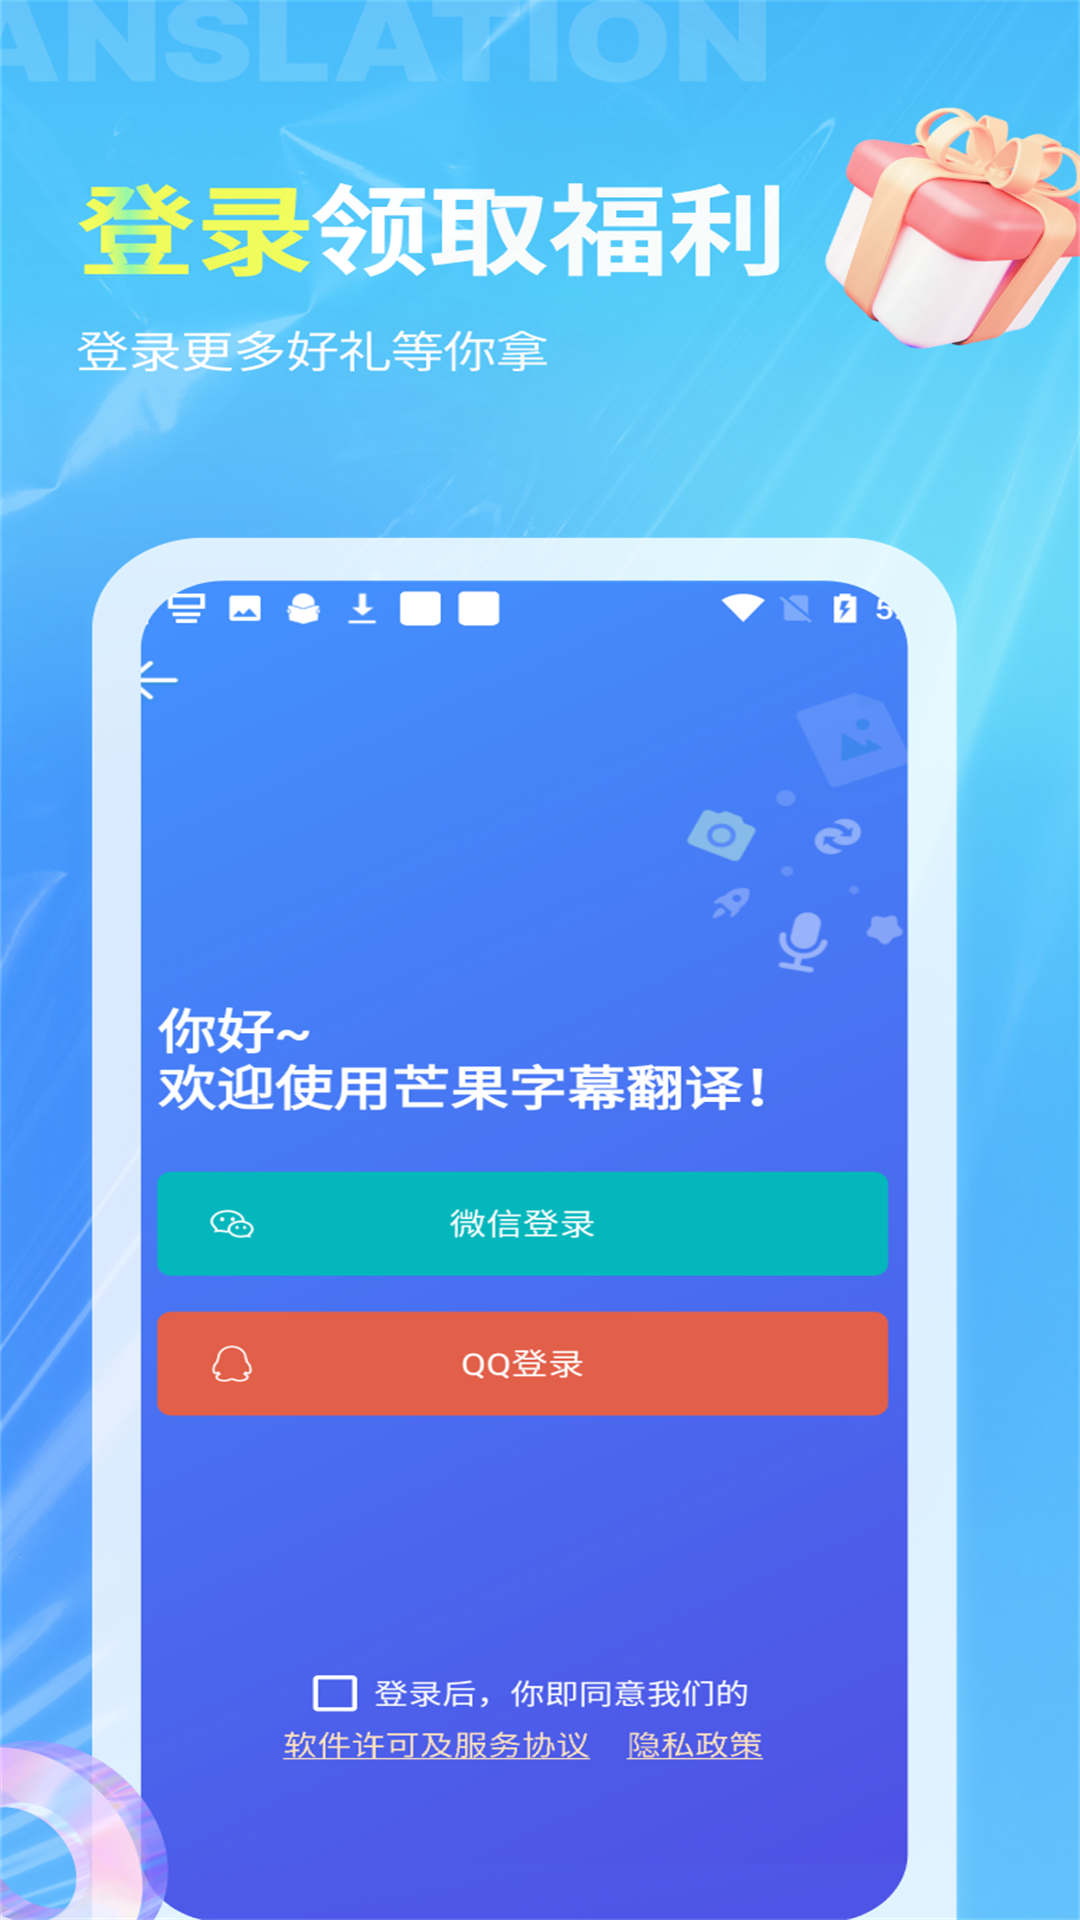 芒果字幕翻译app